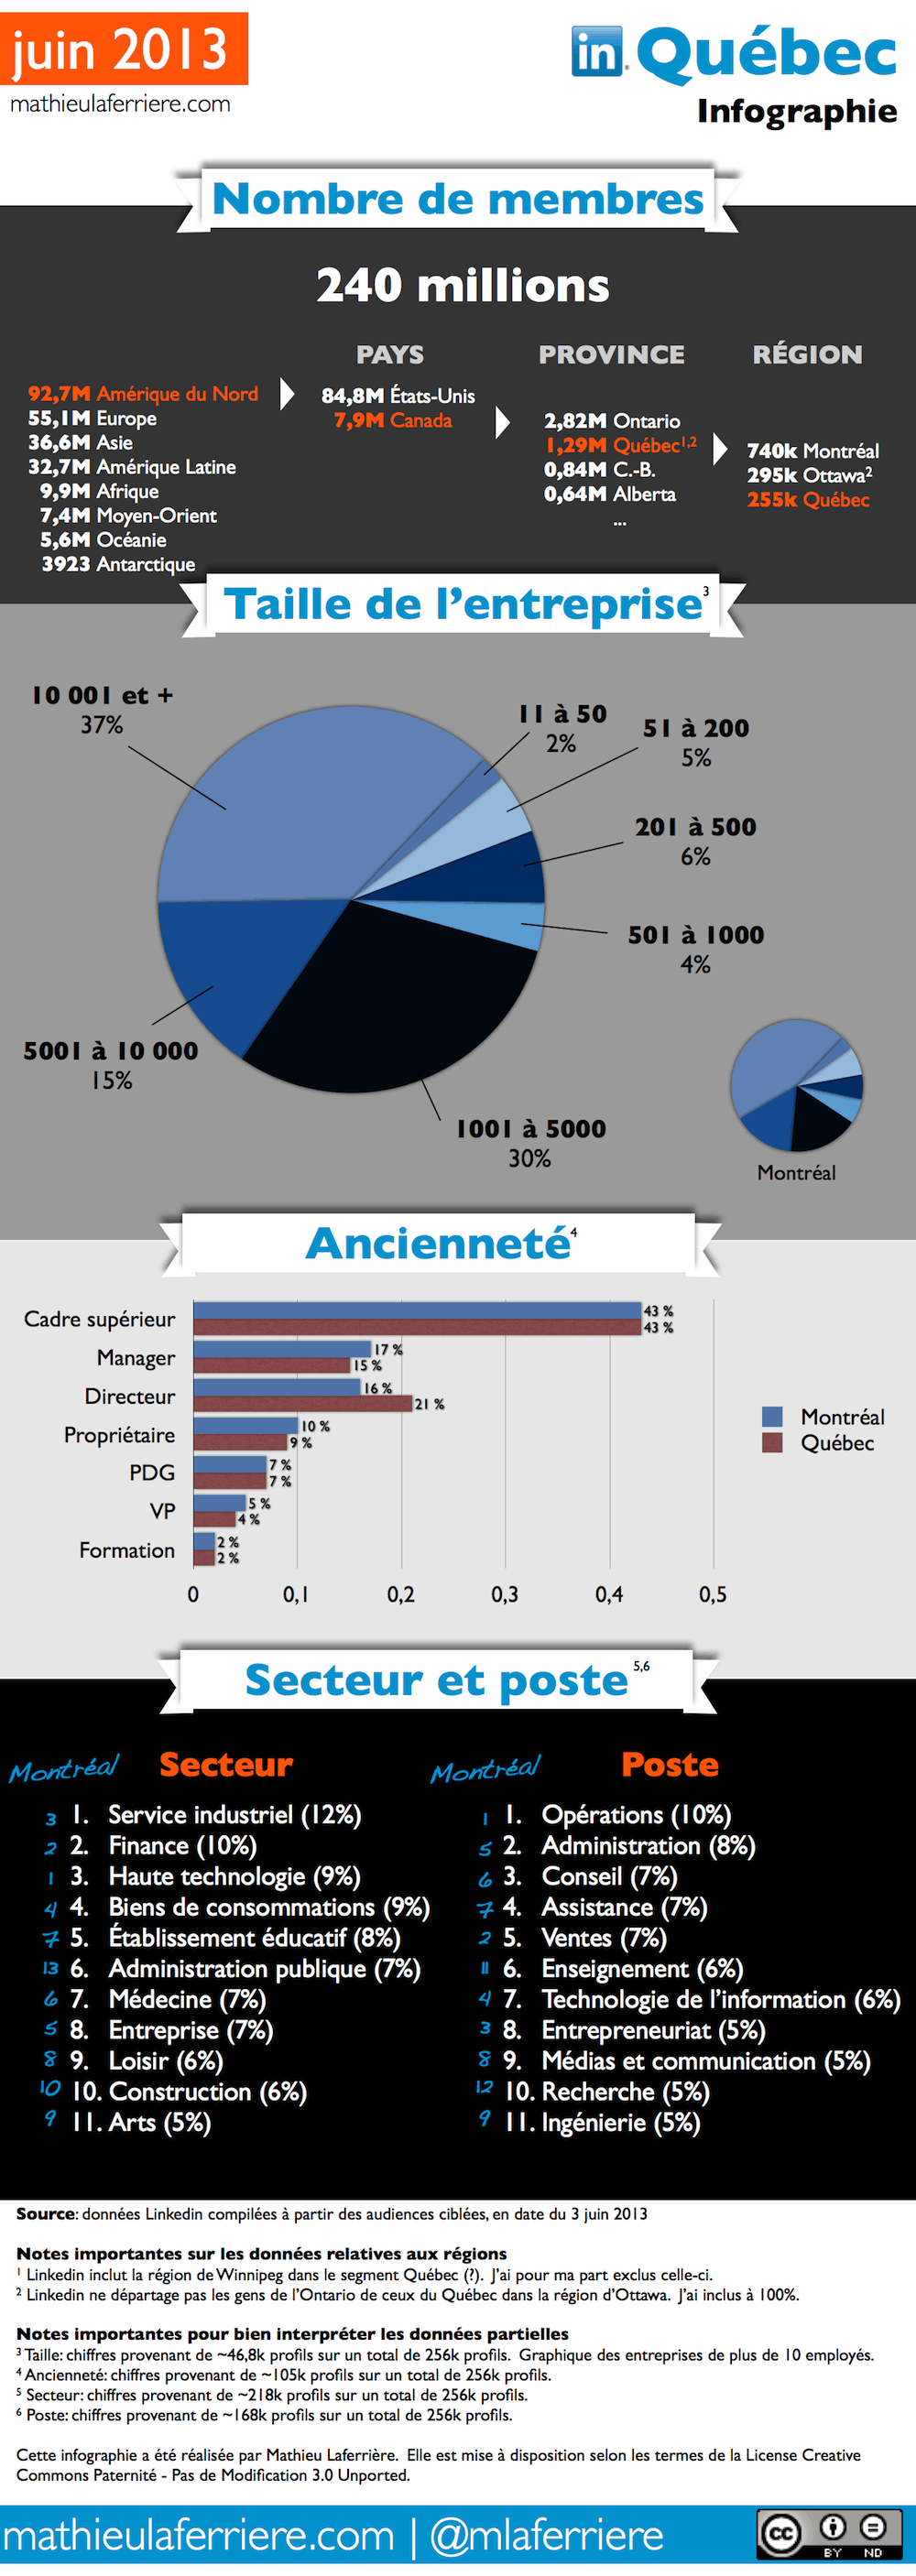 Statistiques d’utilisation de Linkedin à Montréal en 2013